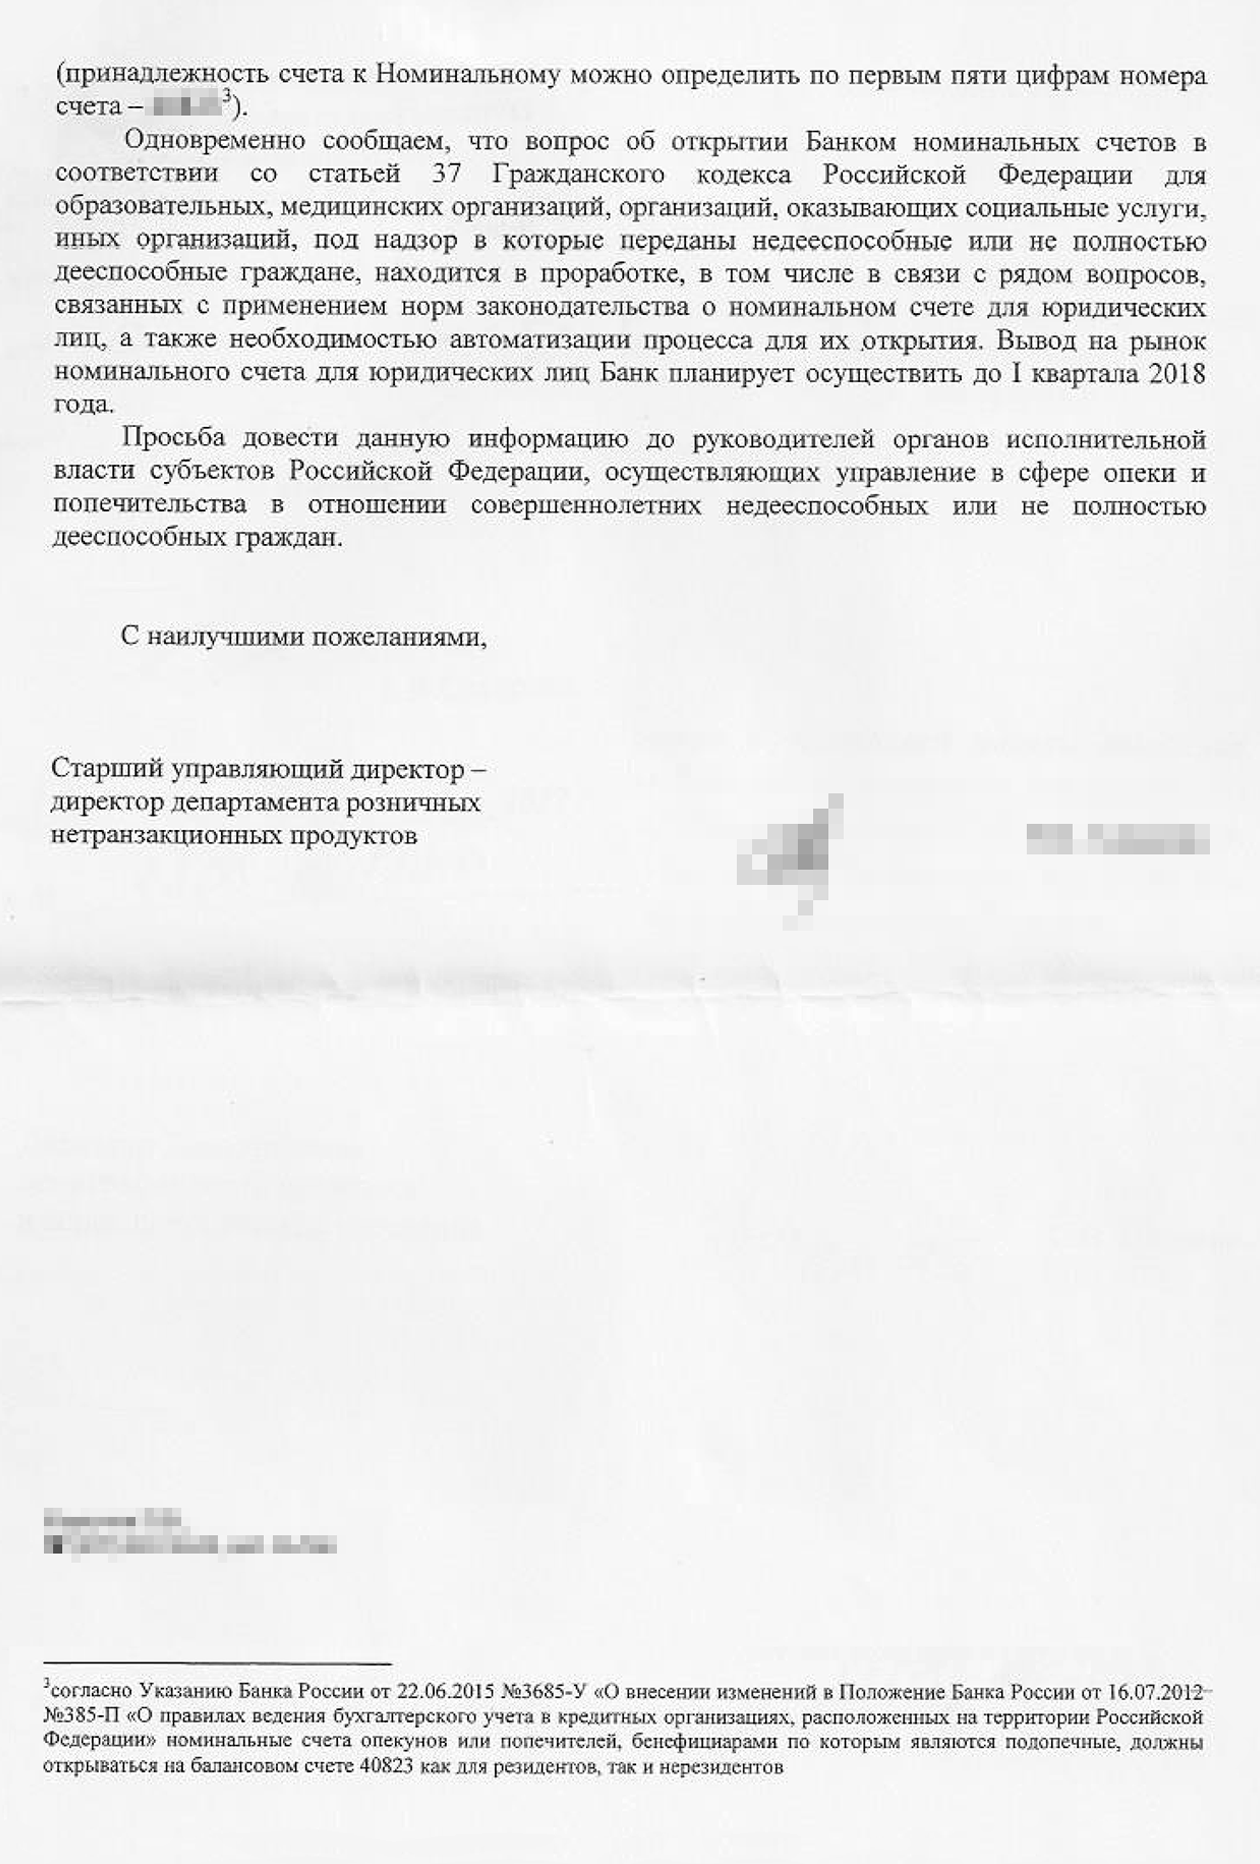 Письмо Сбера в Министерство труда и соцзащиты о новом банковском продукте — номинальном счете